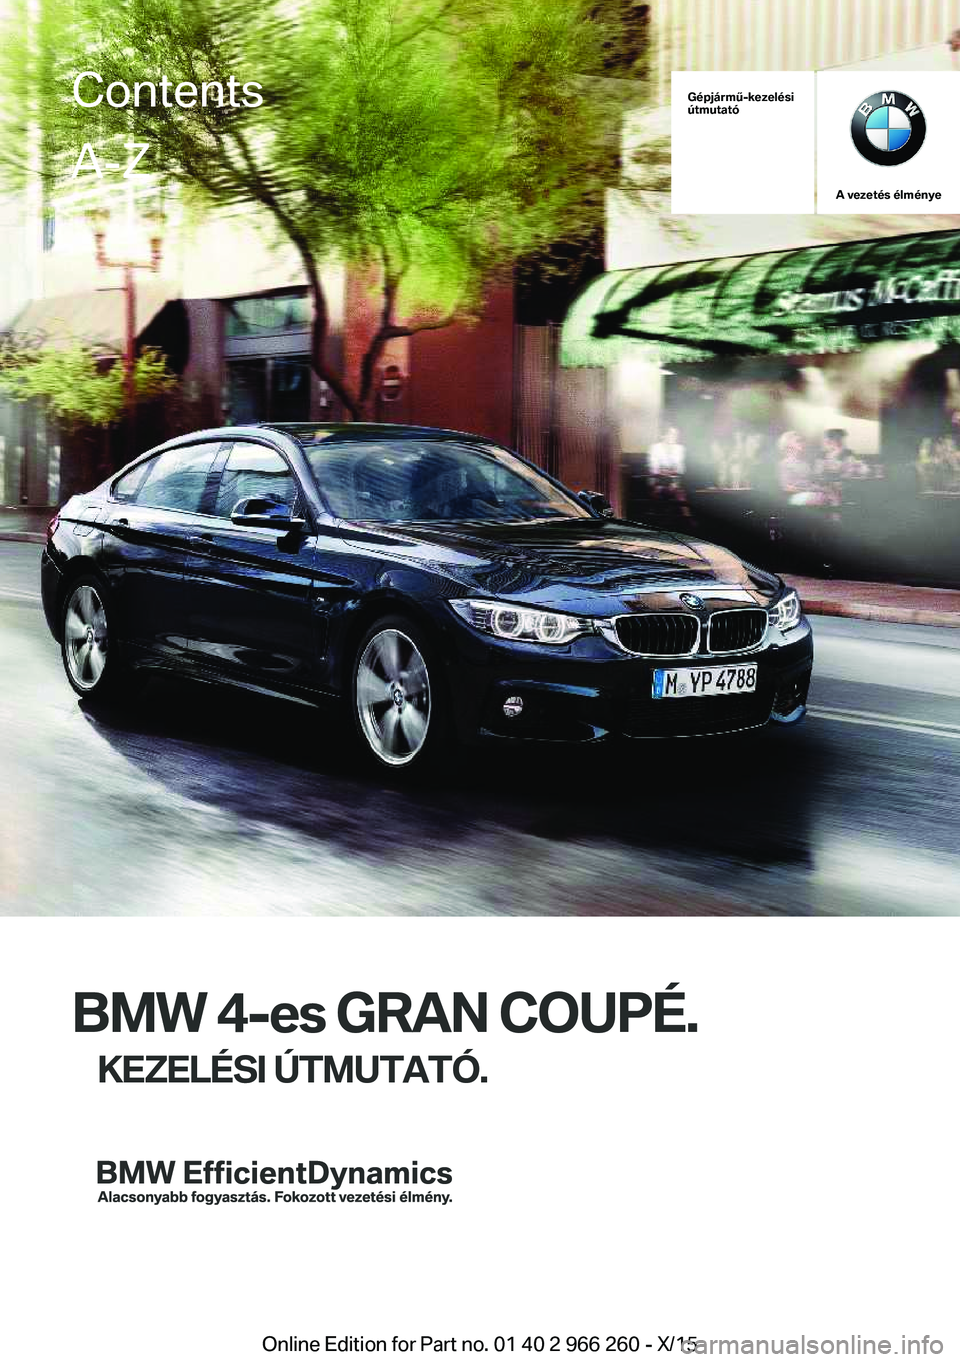 BMW 4 SERIES GRAN COUPE 2016  Kezelési útmutató (in Hungarian) Gépjármű-kezelési
útmutató
A vezetés élménye
BMW 4-es GRAN COUPÉ.
KEZELÉSI ÚTMUTATÓ.
ContentsA-Z
Online Edition for Part no. 01 40 2 966 260 - X/15   